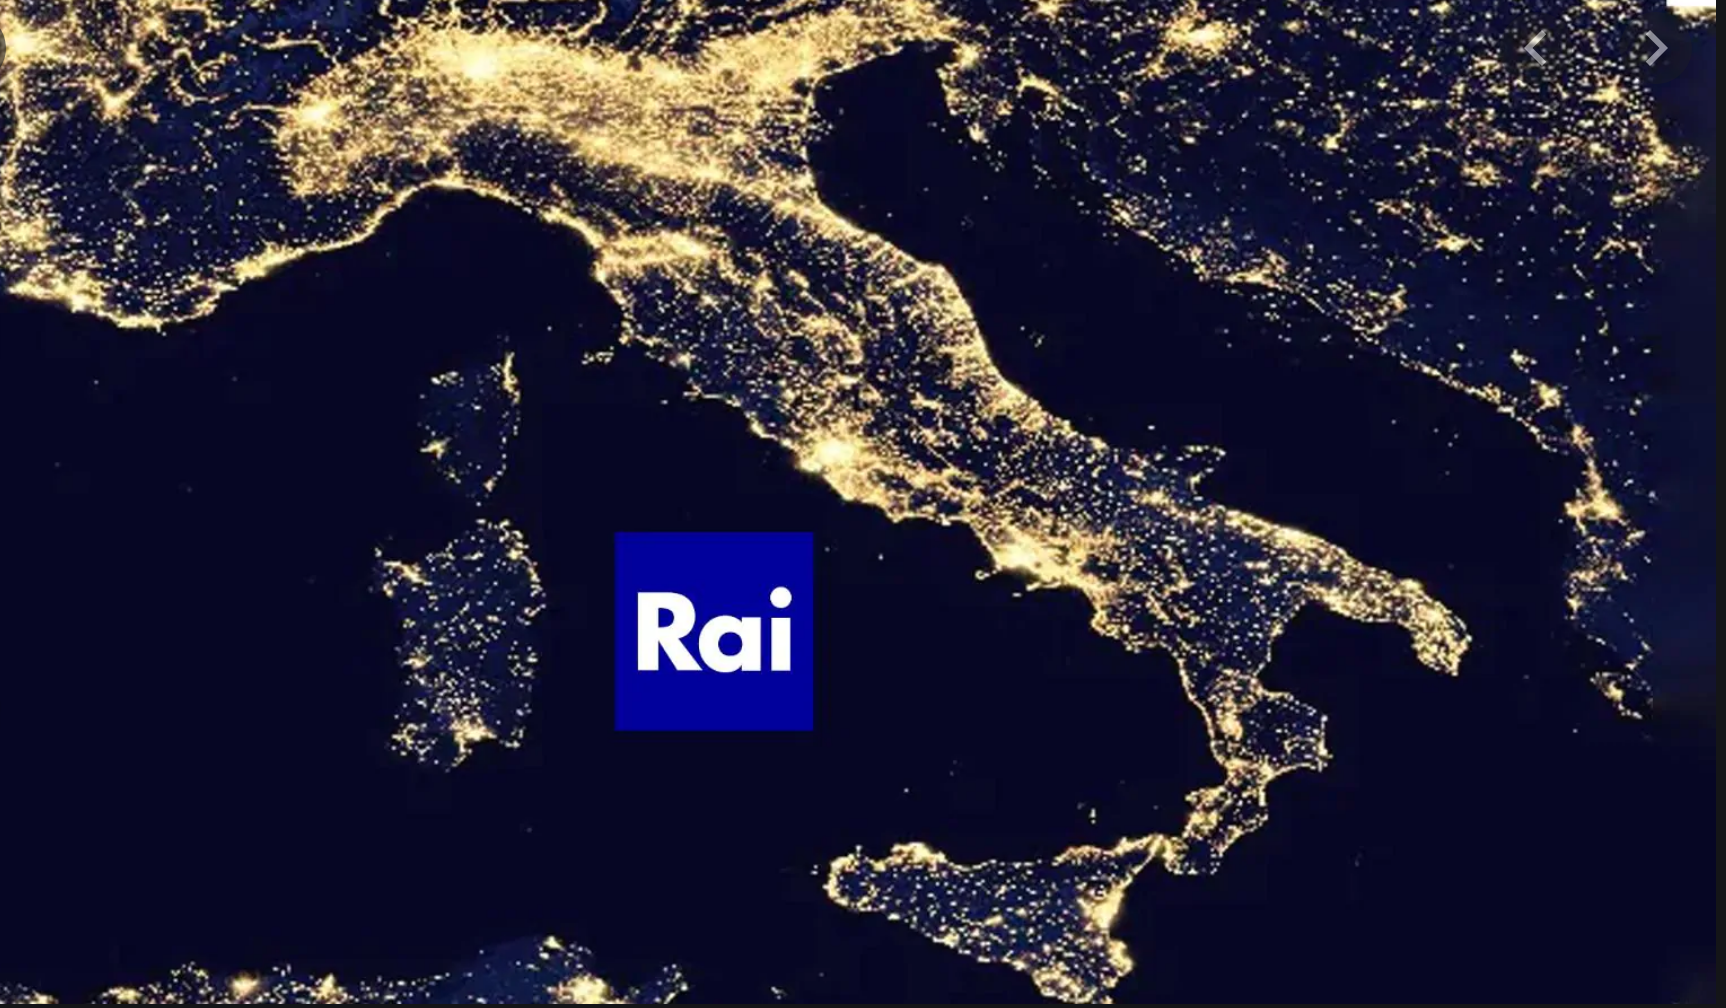 RAI  leader tra i broadcaster pubblici europei nella fascia 15-24